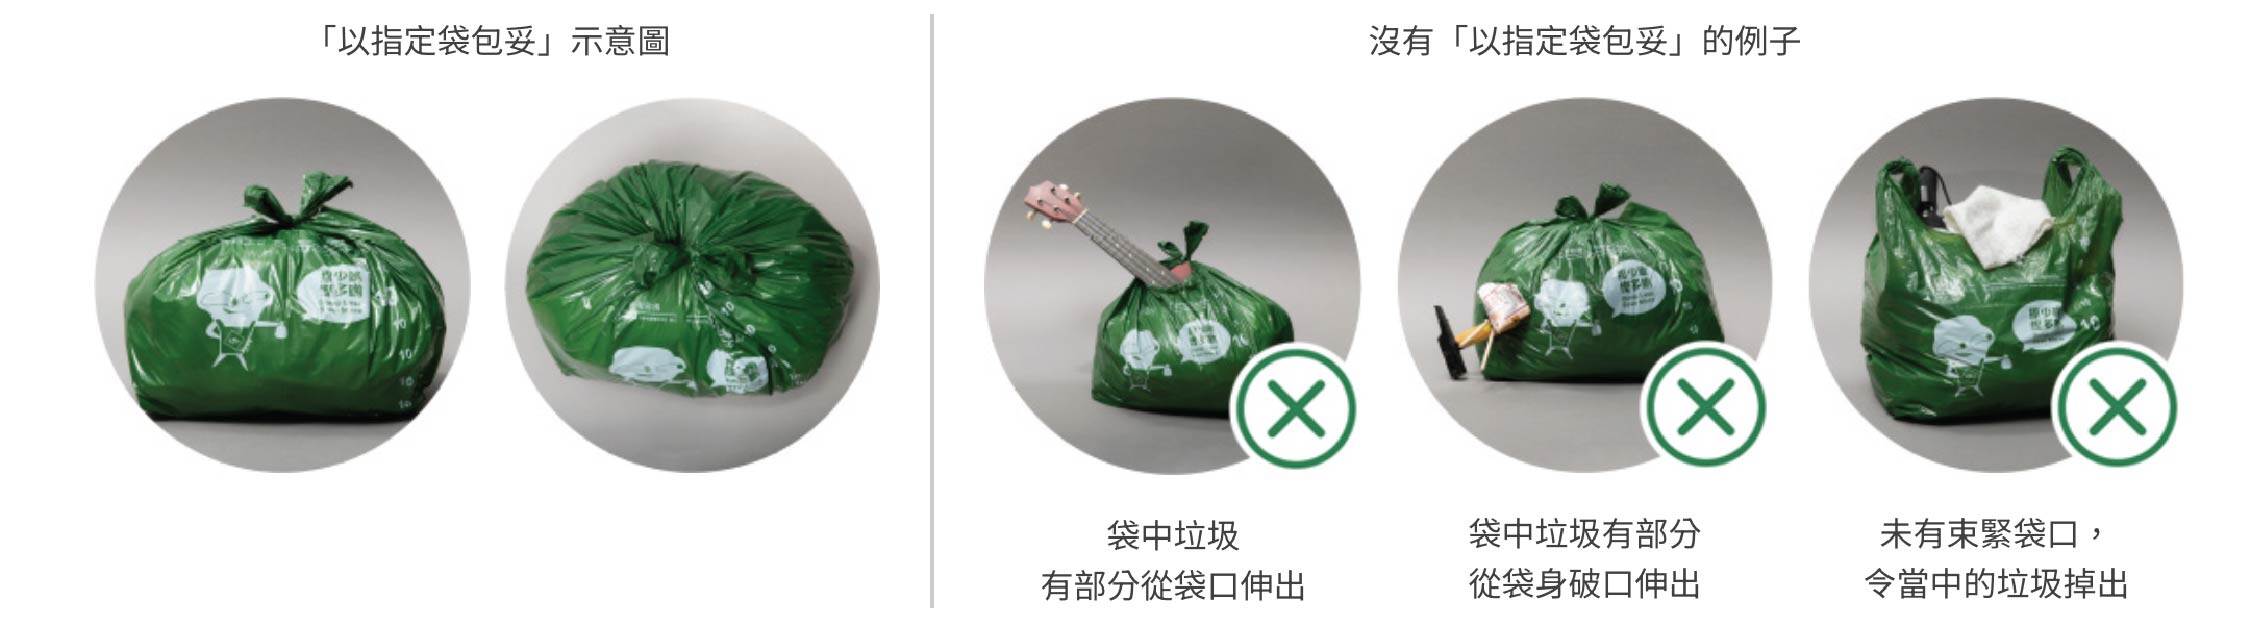 香港垃圾徵費懶人包：垃圾包裝方法